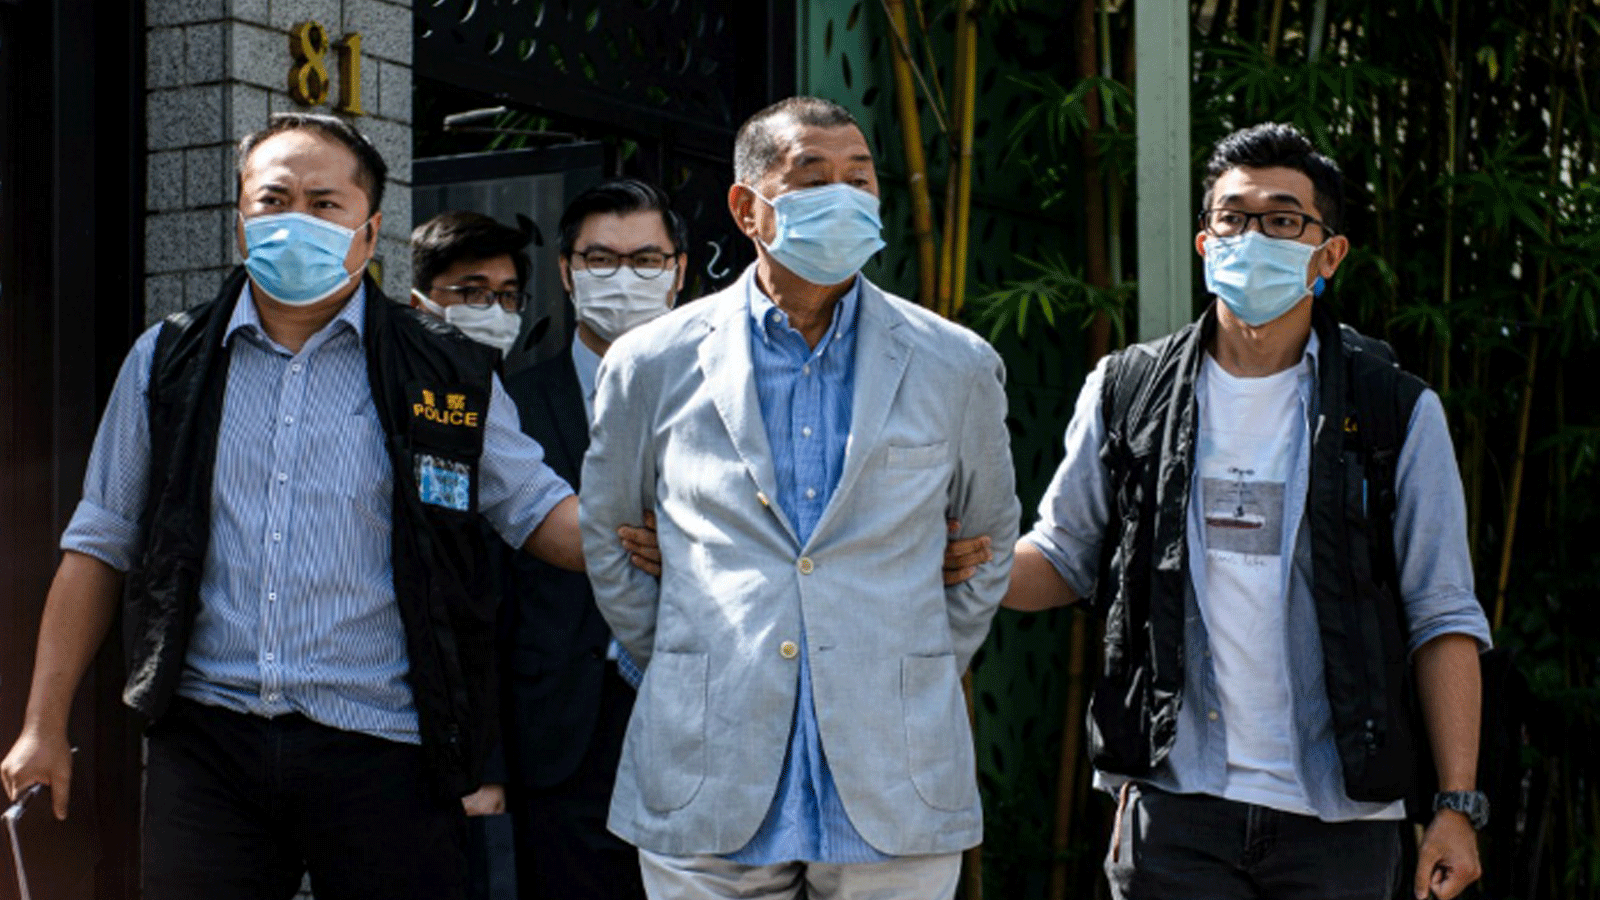  شرطة الأمن القومي تعتقل المدير الإعلامي لهونج كونج جيمي لاي